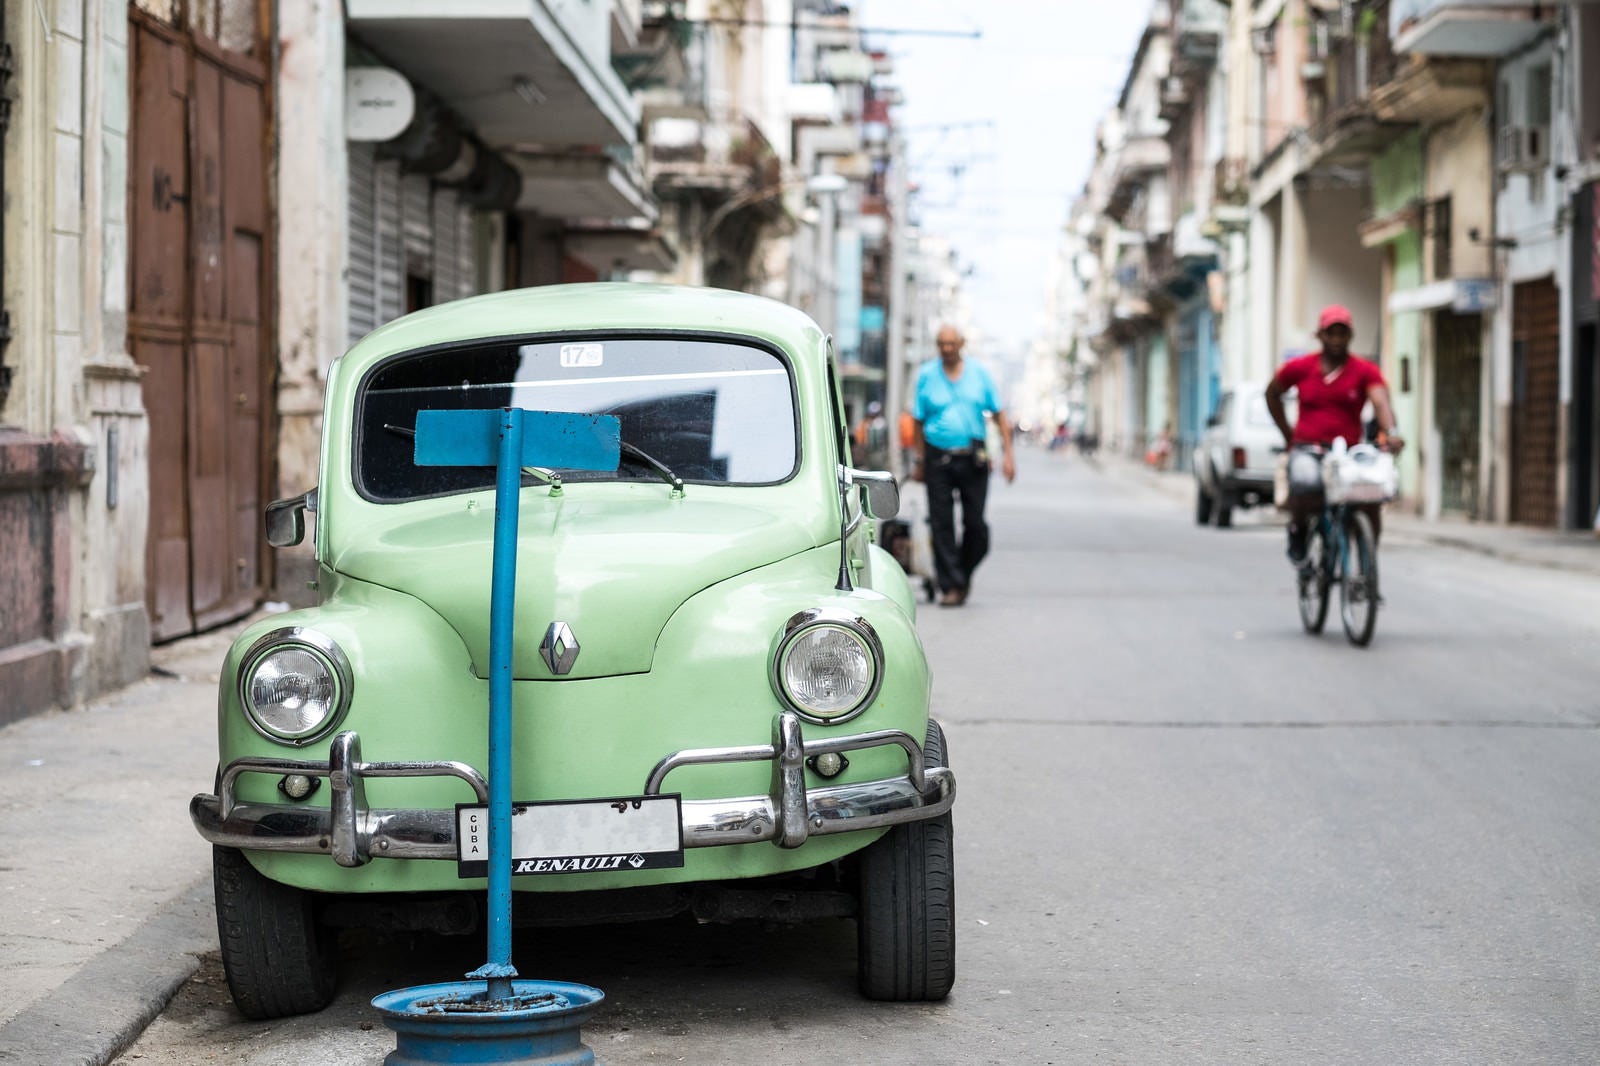 「ハバナの街並みと停車するクラシックカー」の写真